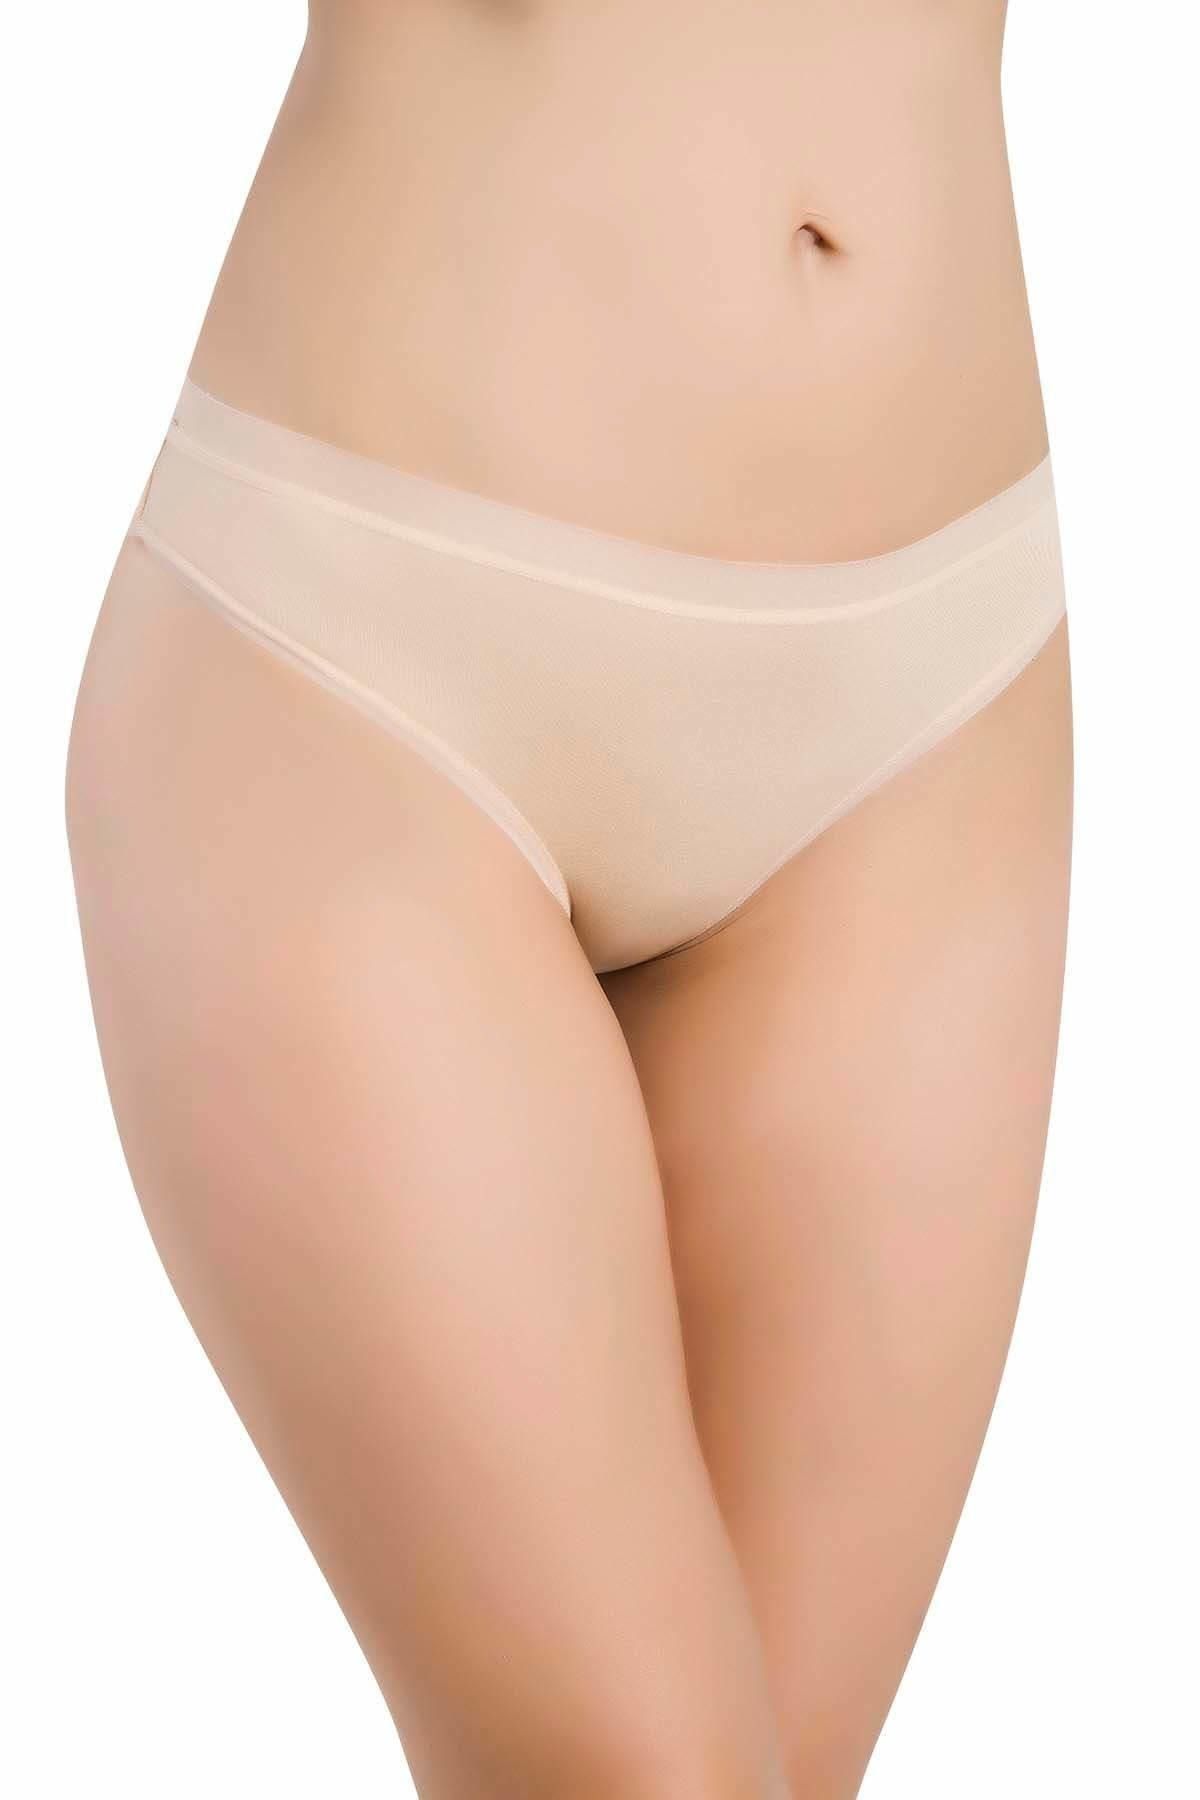 bejamonti Kadın Şeffaf Lastik Micro Modal Bikini Külot 3'lü